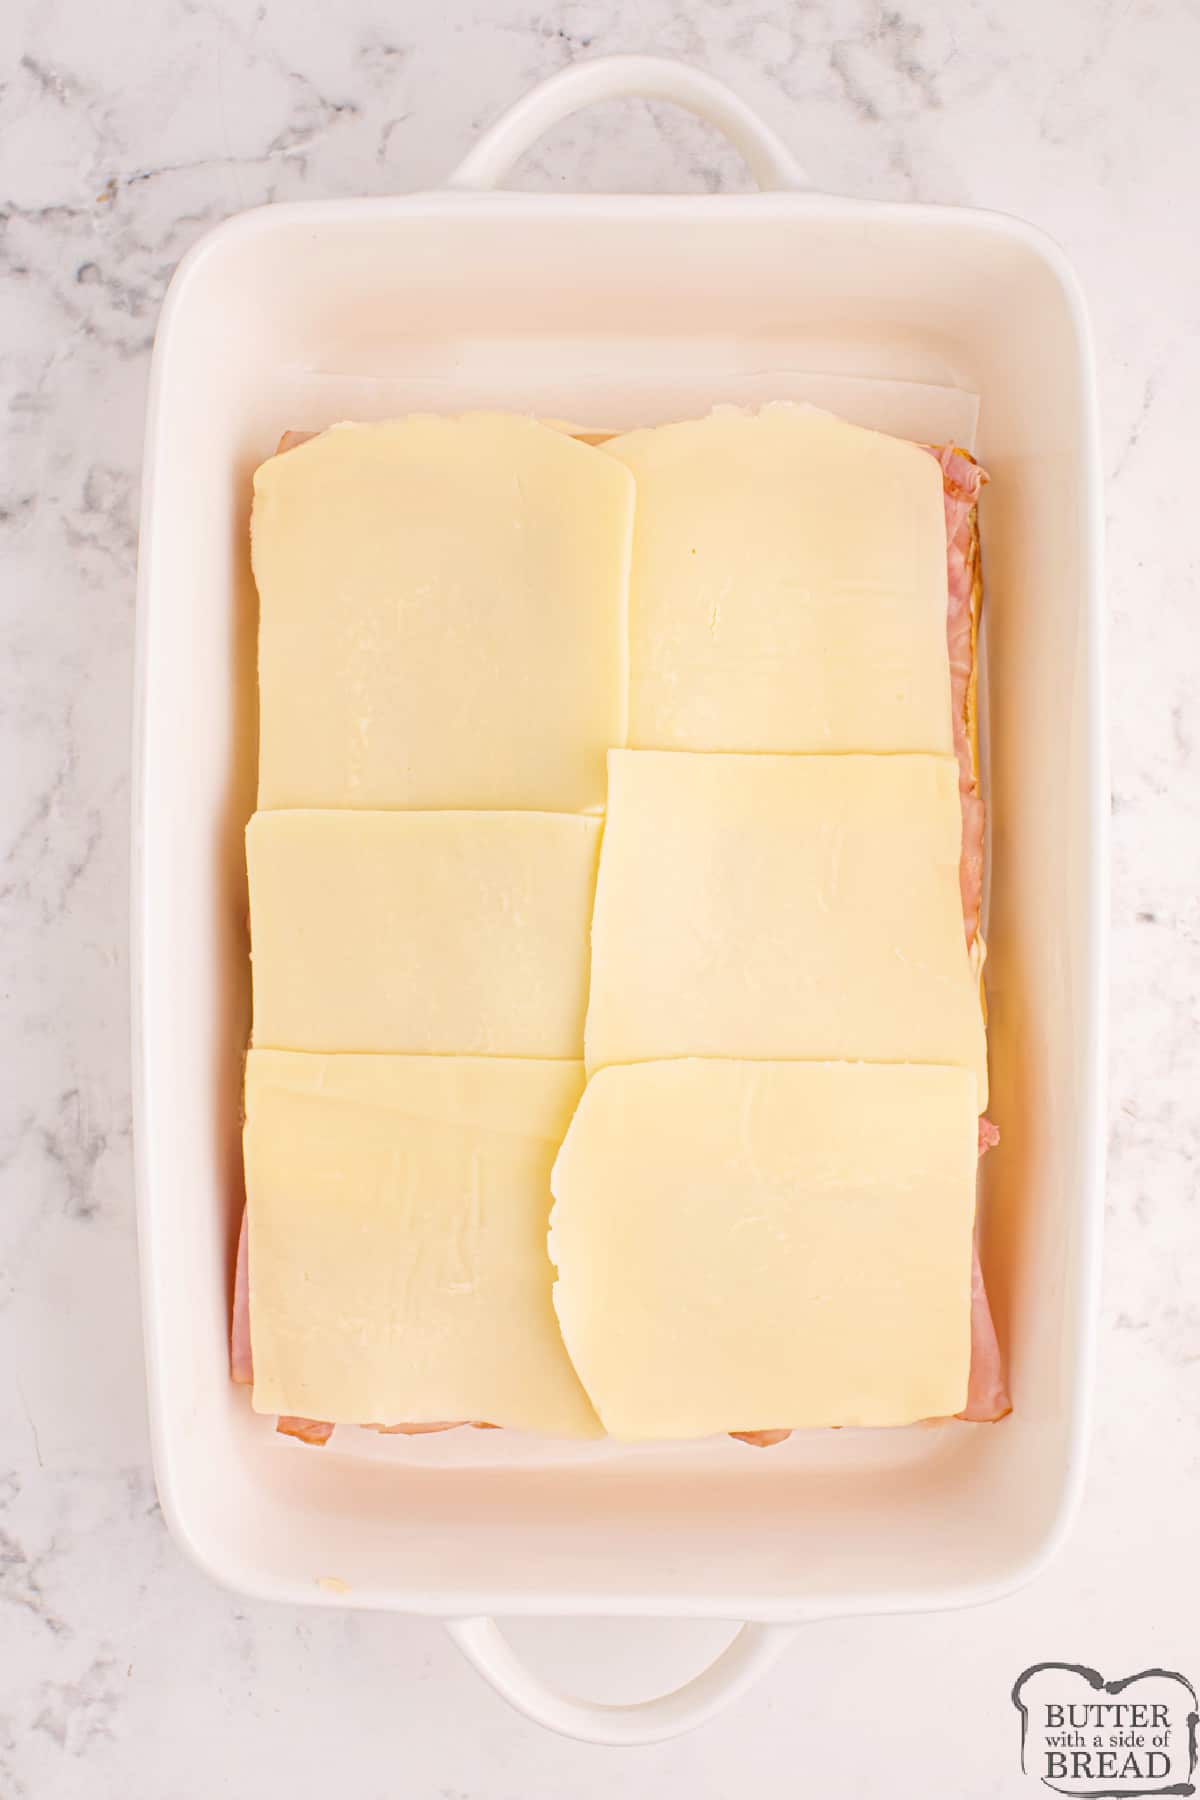 Add mozzarella cheese.